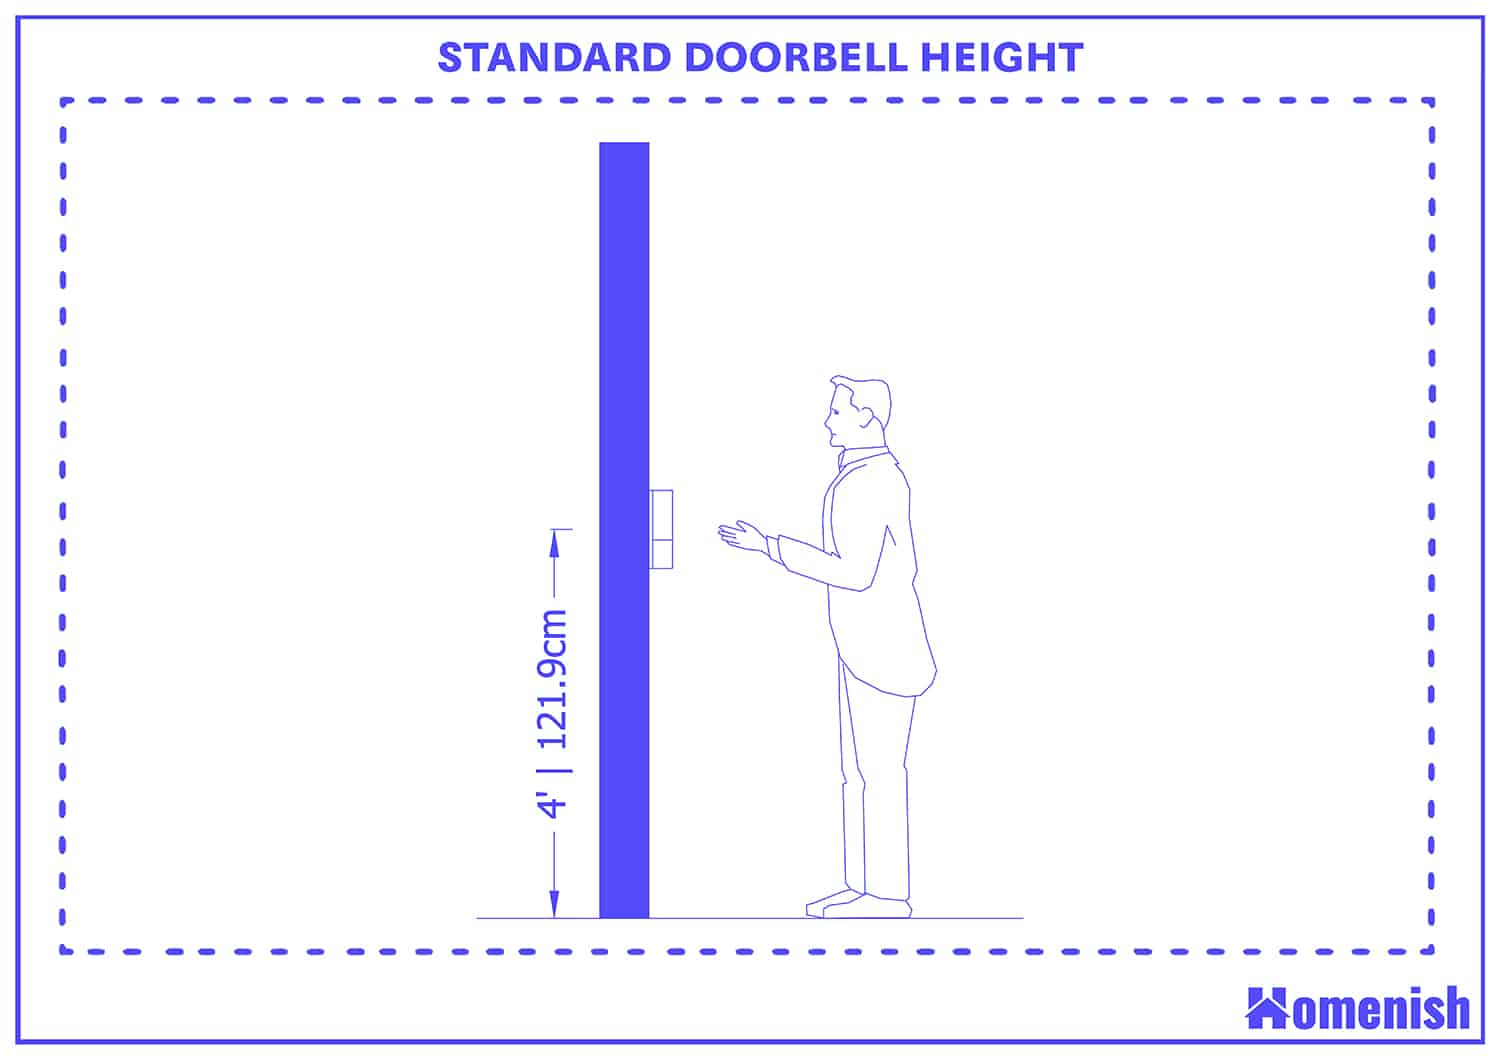 Standard doorbell height